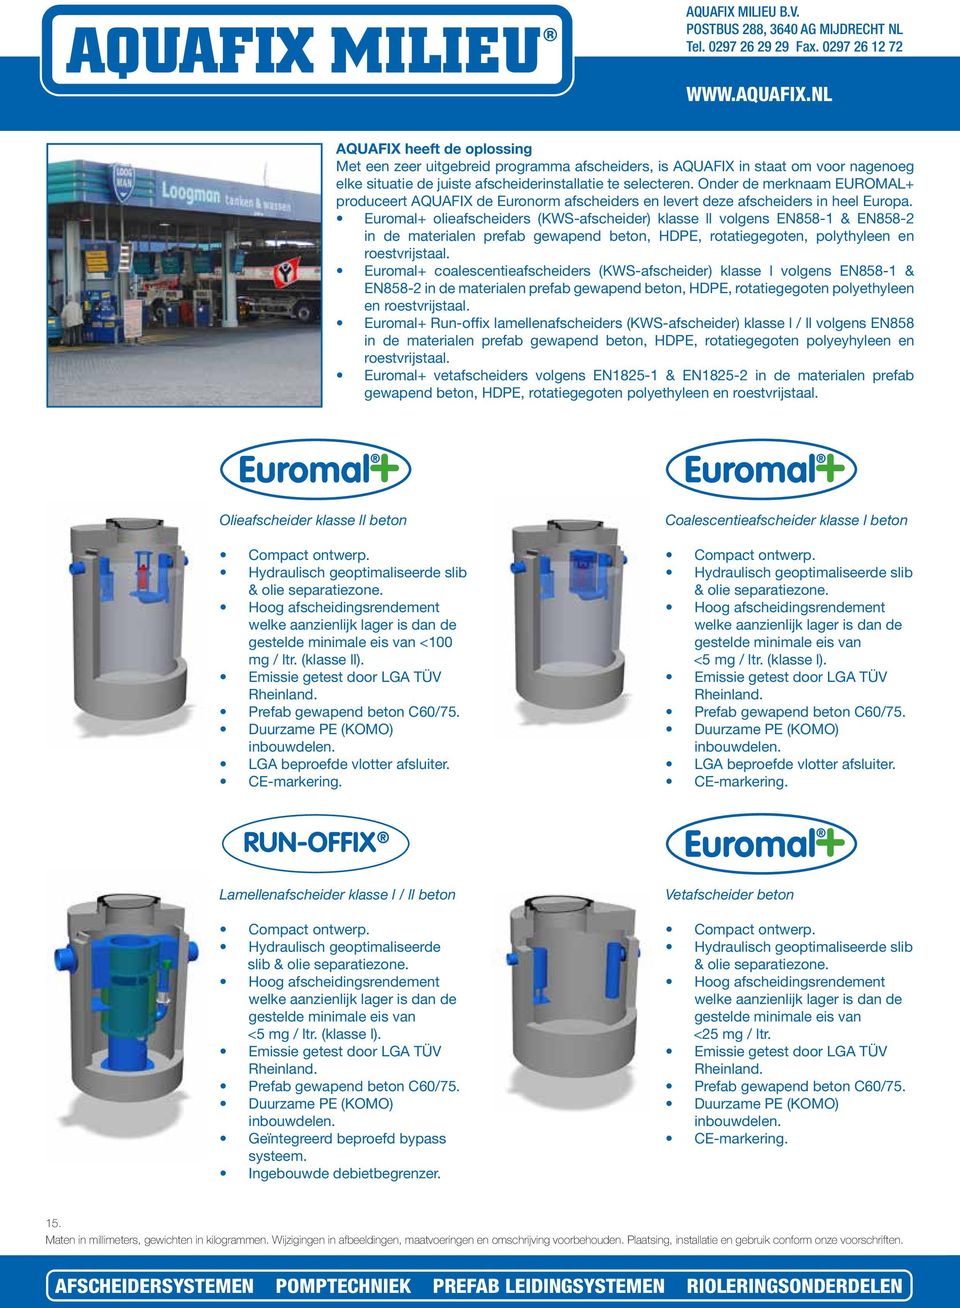 Euromal+ olieafscheiders (KWS-afscheider) klasse ll volgens EN858-1 & EN858-2 in de materialen prefab gewapend beton, HDPE, rotatiegegoten, polythyleen en roestvrijstaal.